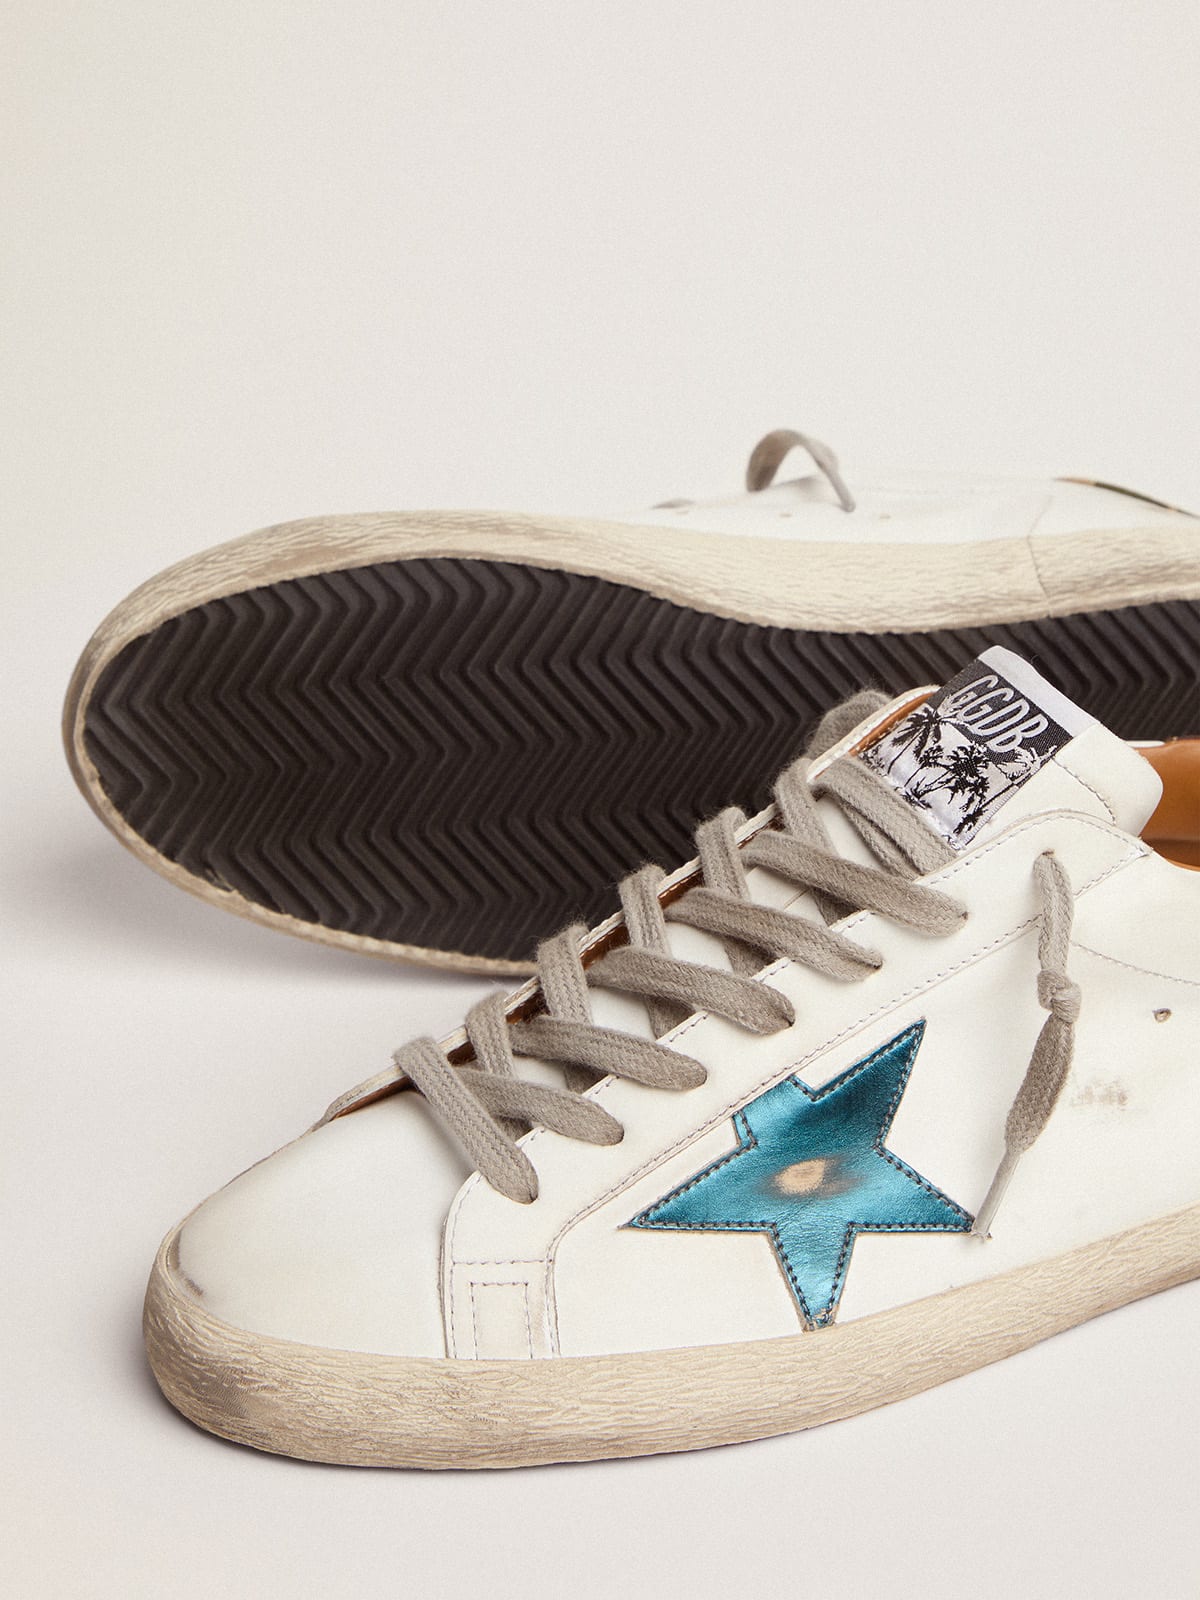 Golden Goose - Sneaker Super-Star con stella in pelle laminata blu petrolio e talloncino in tessuto ripstop camou in 